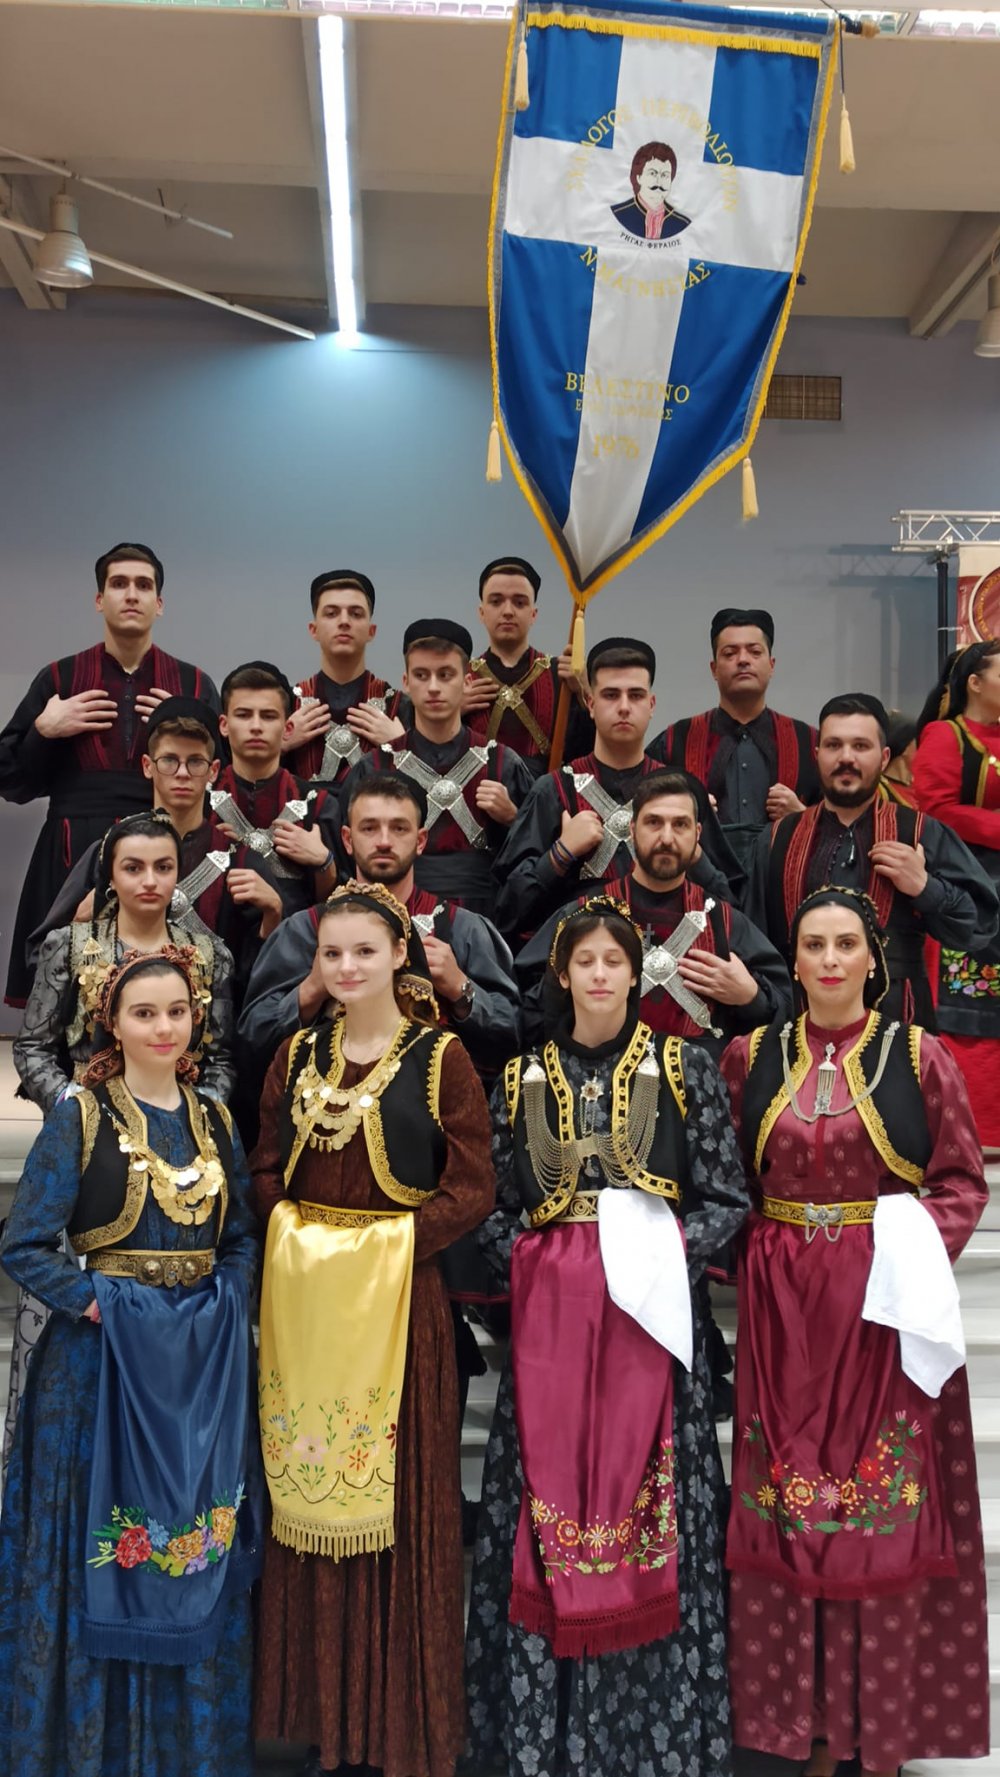 Εντυπωσίασε ο Σύλλογος Περιβολιωτών Ν. Μαγνησίας στην Θεσσαλονίκη